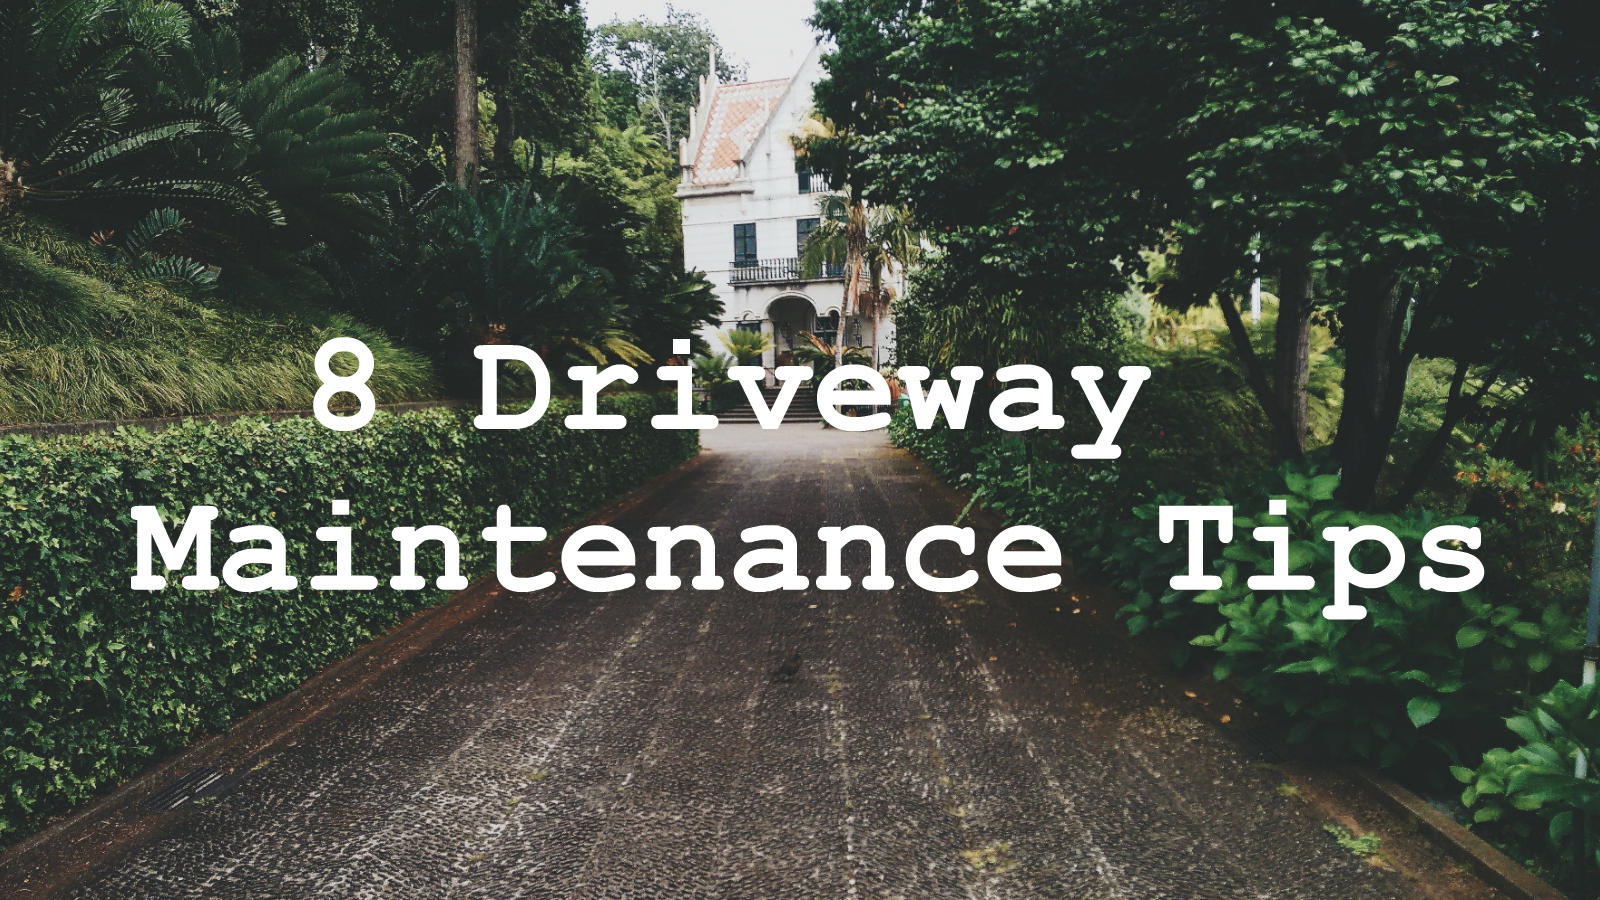 8 Driveway Maintenance Tips - 8 Driveway Maintenance Tips